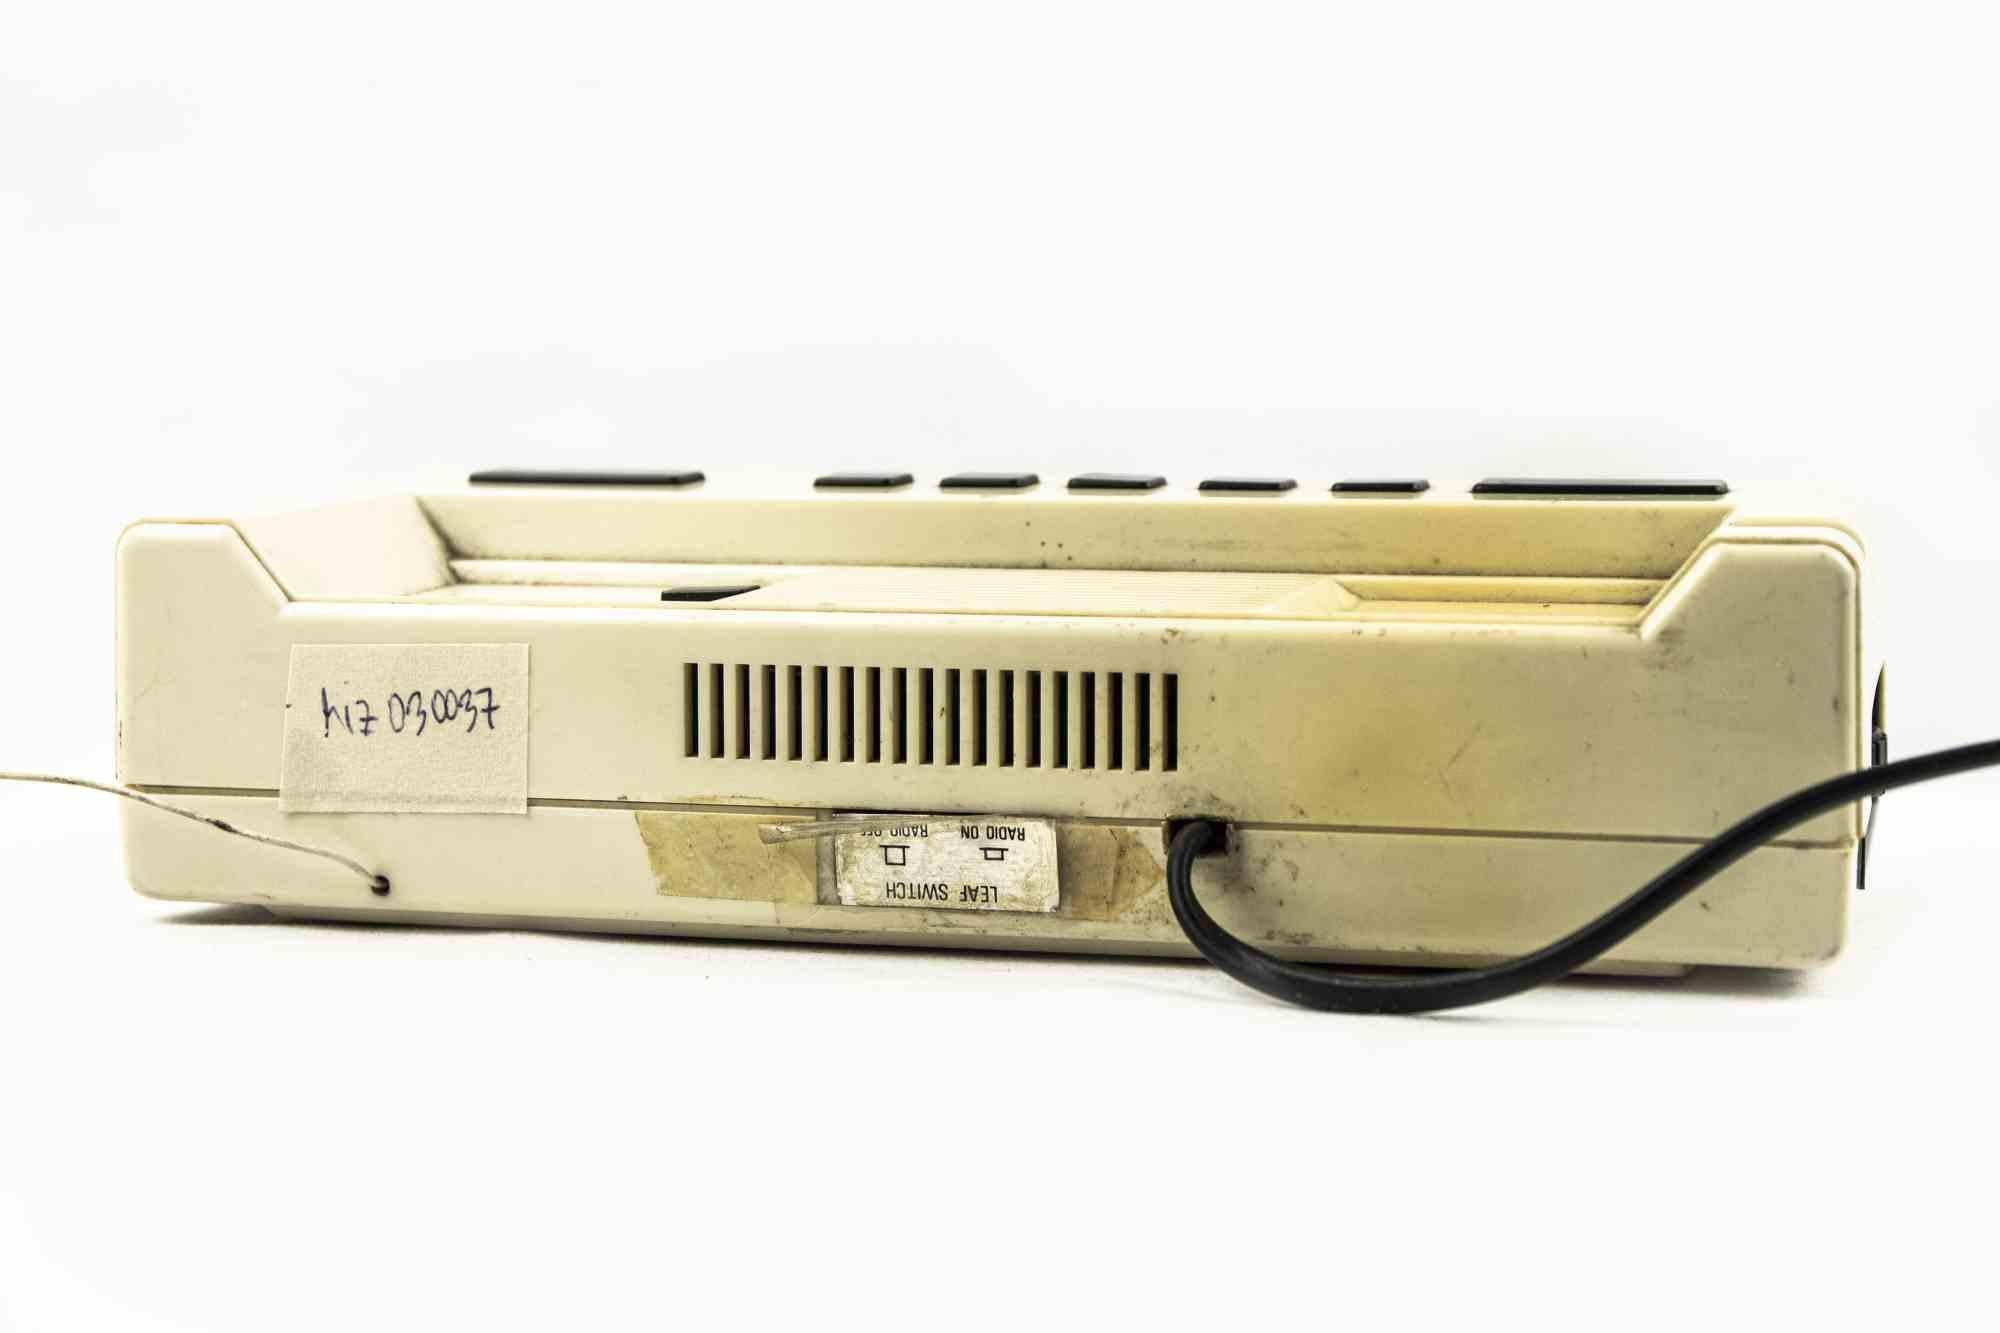 Vintage Clock Radio ist ein originelles Dekorationsobjekt, das in den 1980er Jahren von INNO-HIT realisiert wurde.

Ein Vintage-Telefon-Uhr-Radio Modell RST 592.

Angemessene Bedingungen aufgrund der Zeit